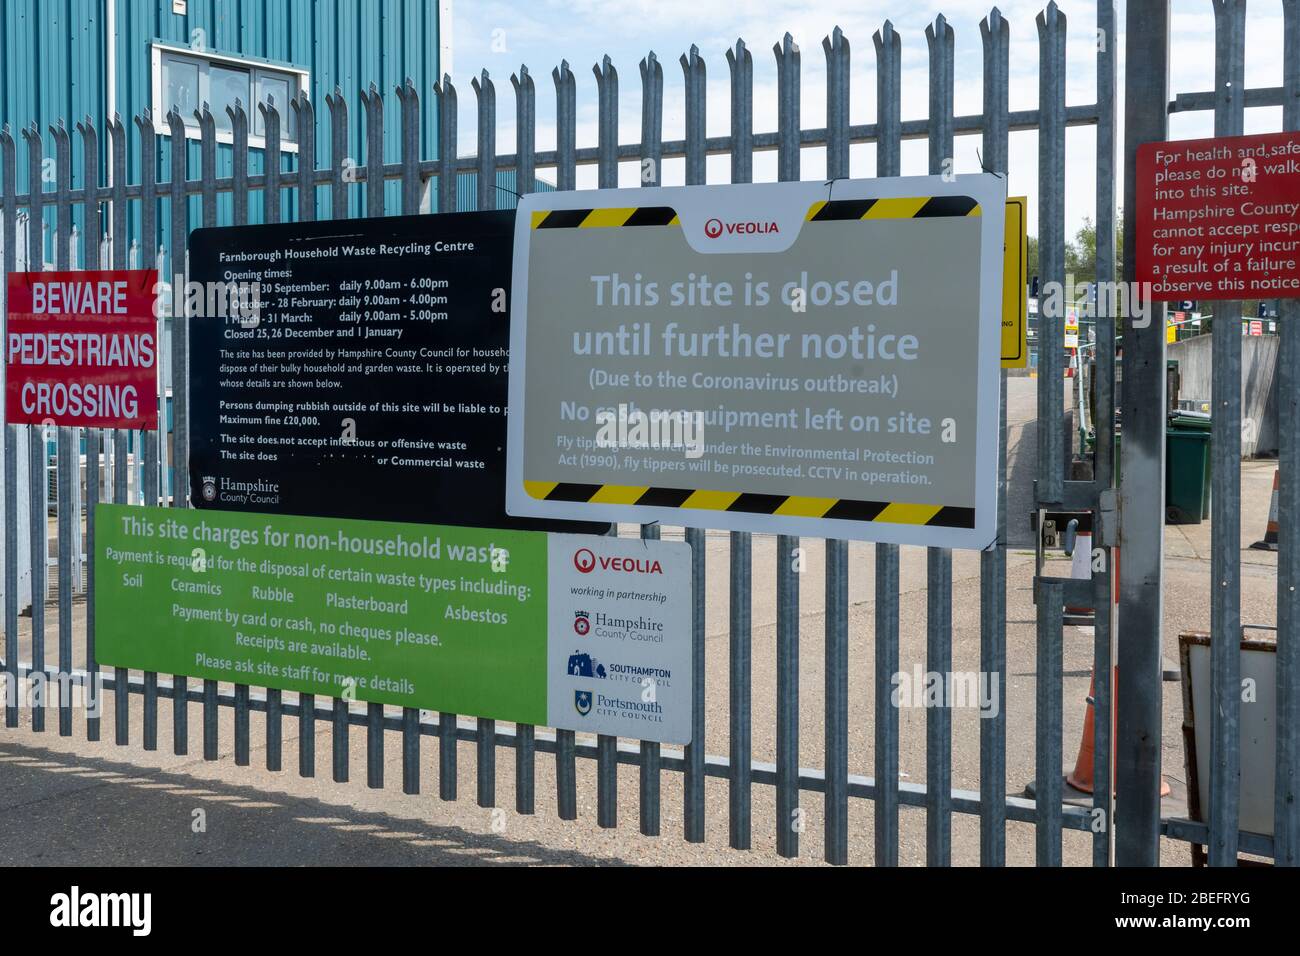 12. April 2020. Hinweis am Tor eines britischen Abfallrecyclingzentrums von Veolia, in dem angegeben ist, dass diese Website aufgrund des Coronavirus (Covid-19)-Ausbruchs (Pandemie) bis auf weiteres geschlossen ist. Stockfoto